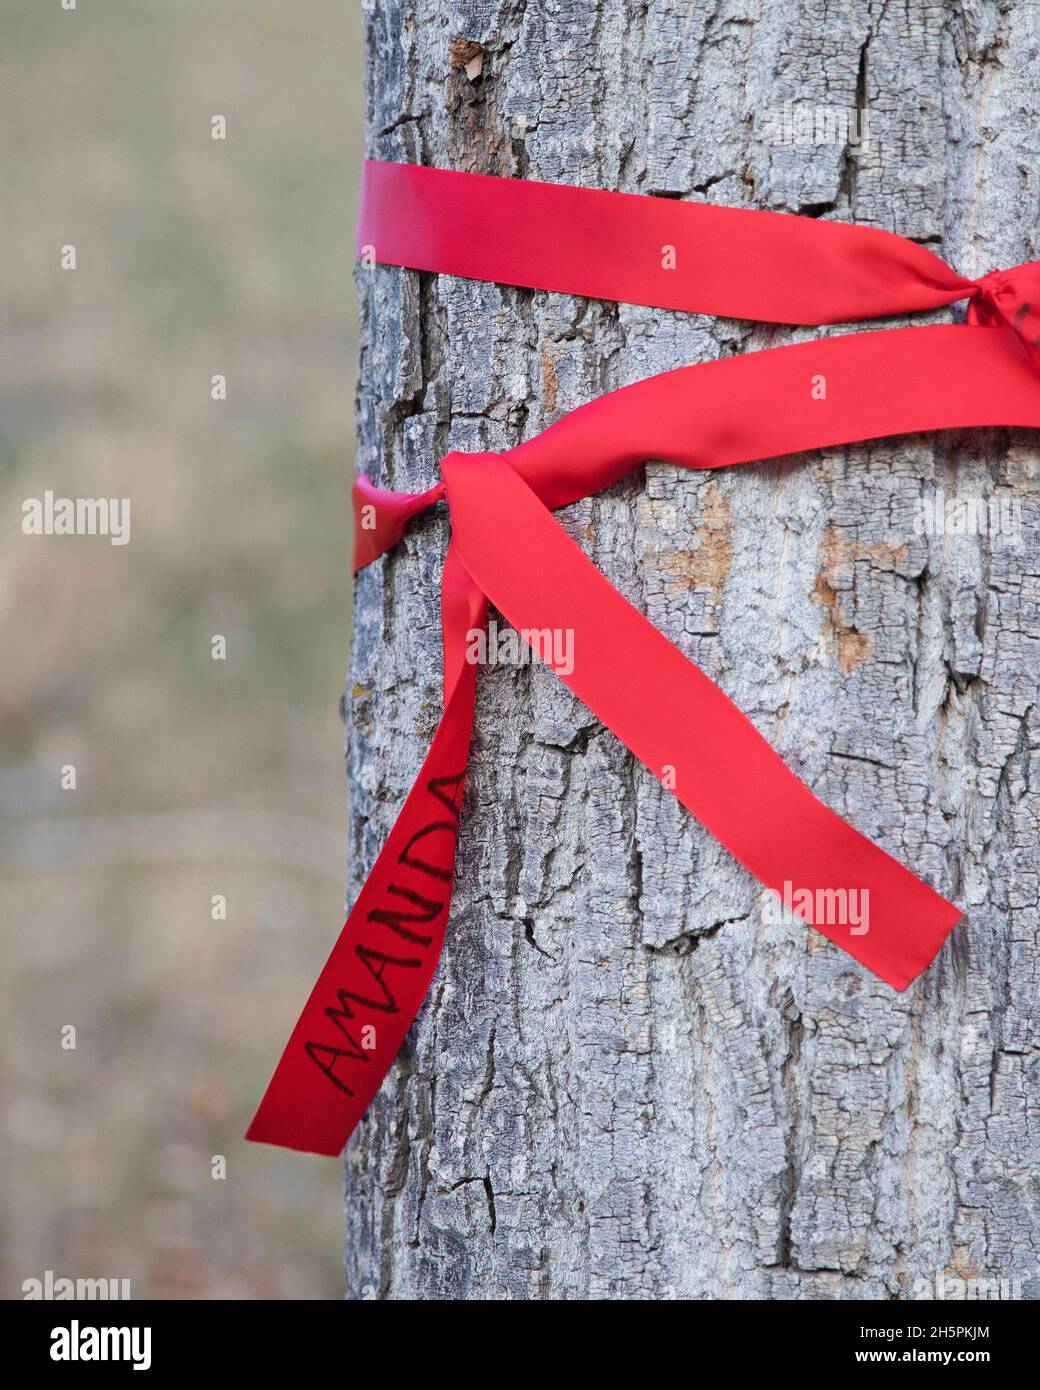 Ruban rouge attaché sur un arbre pour le jour du souvenir comme un mémorial à une femme autochtone disparue ou assassinée. Banque D'Images